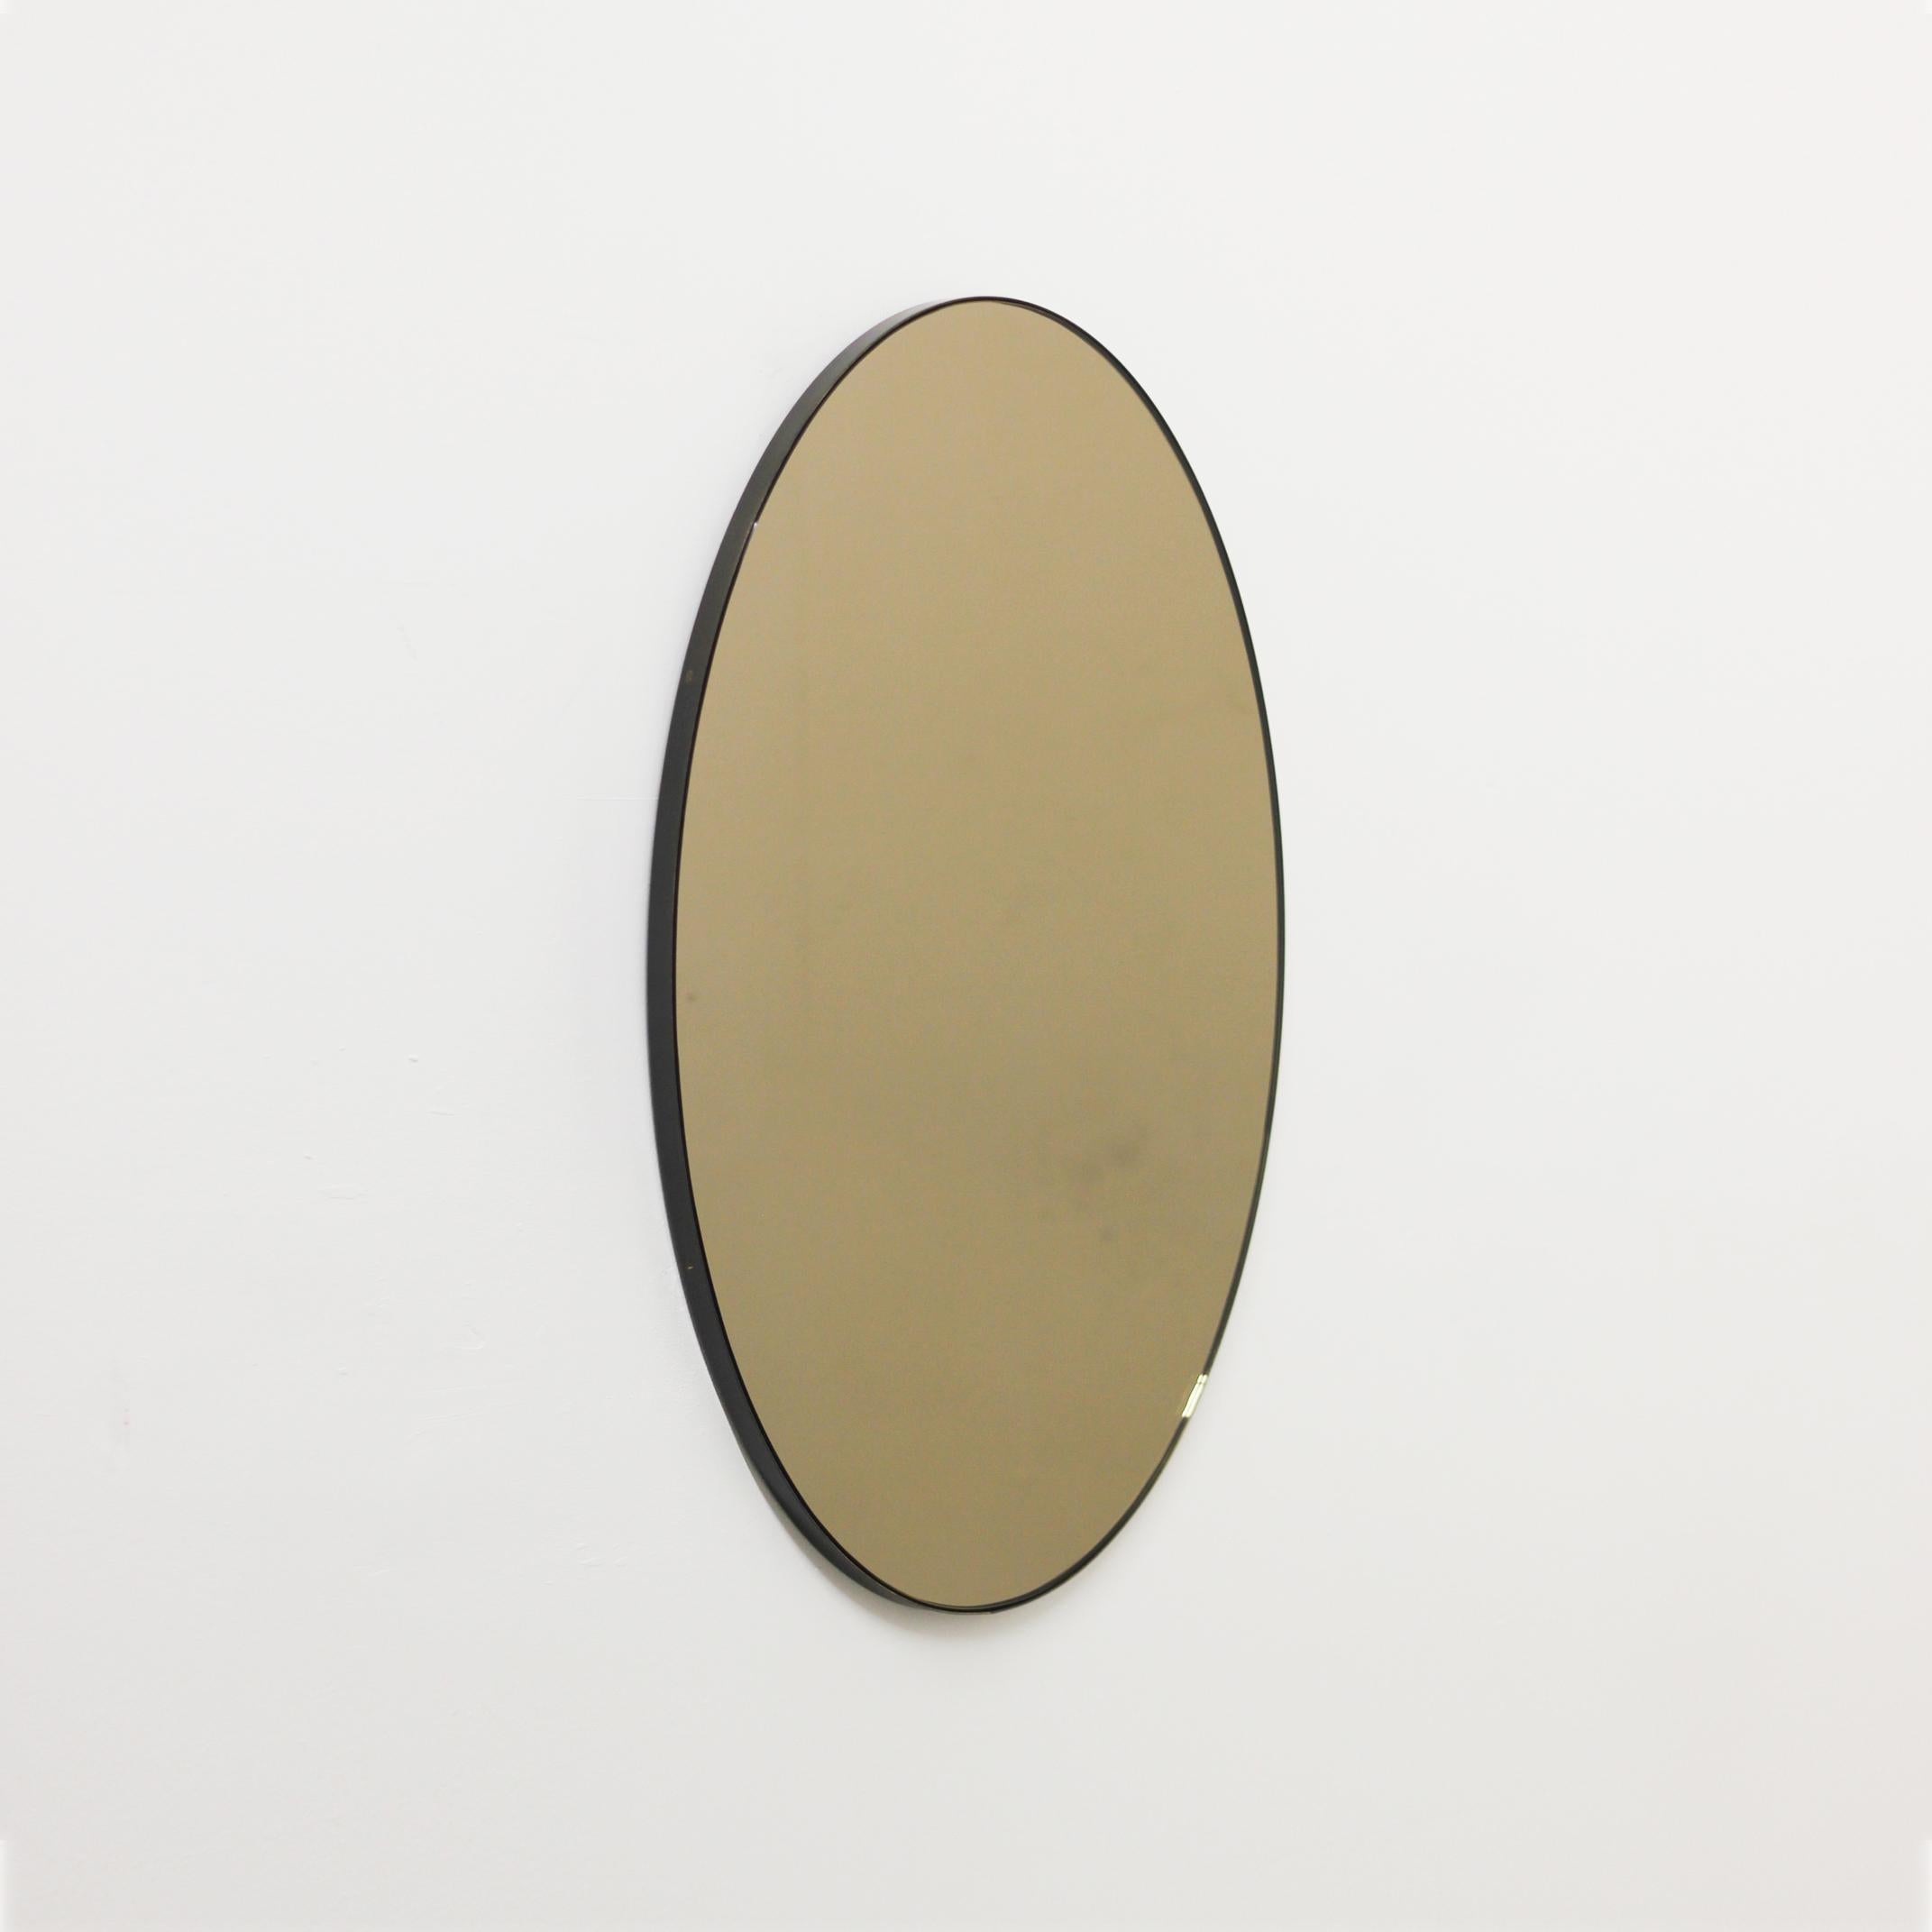 Miroir contemporain ovale teinté bronze avec un élégant cadre en laiton patiné bronze. Conçu et fabriqué à la main à Londres, au Royaume-Uni. Livré entièrement équipé avec un système d'accrochage spécialisé pour une installation facile.

Ce miroir